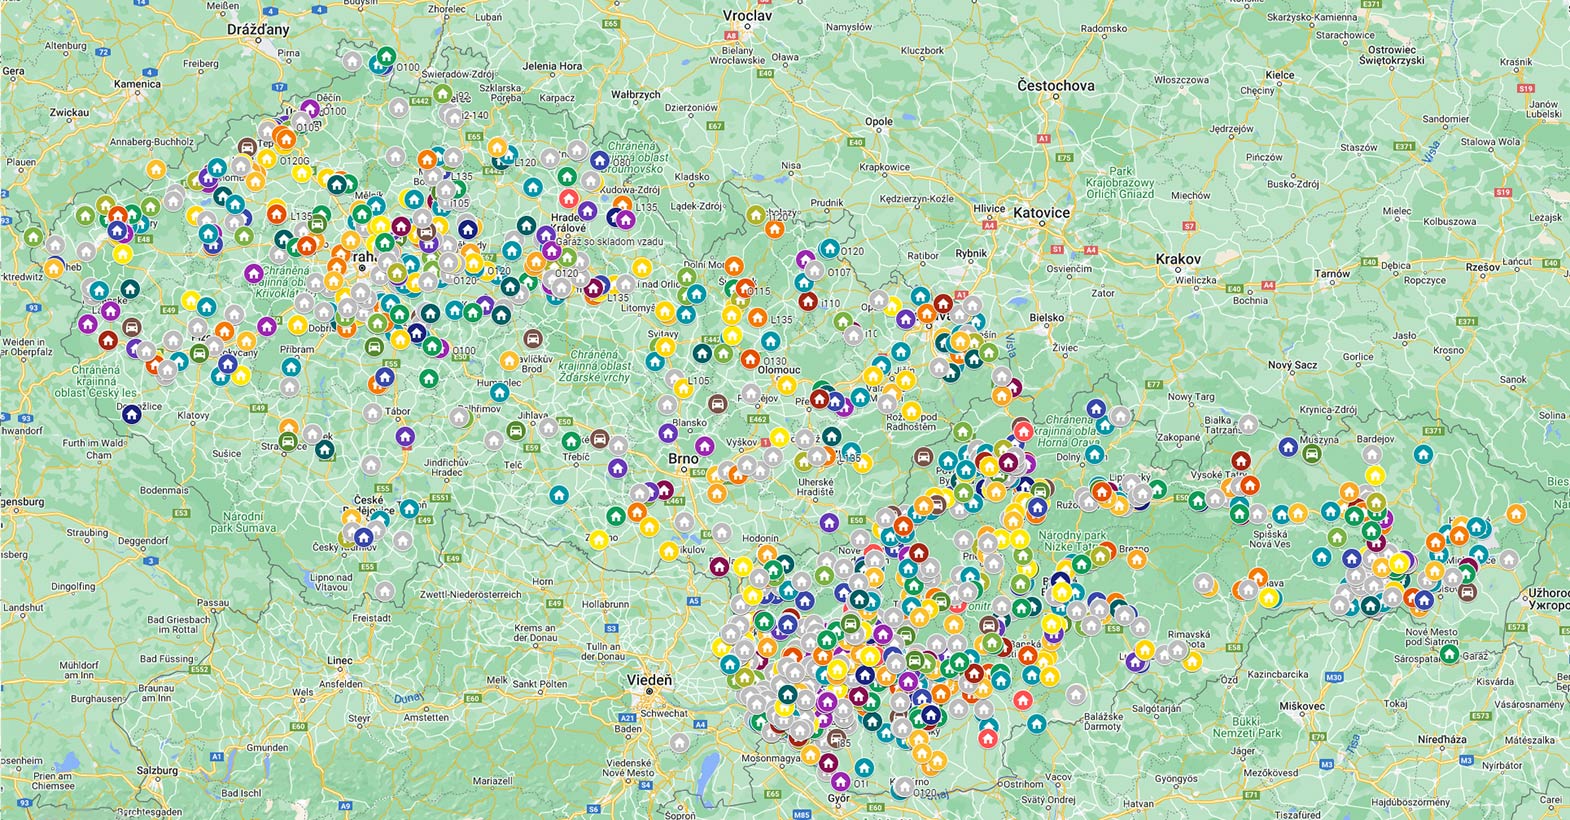 Mapa našich projektov v rámci Slovenska a v Čechách